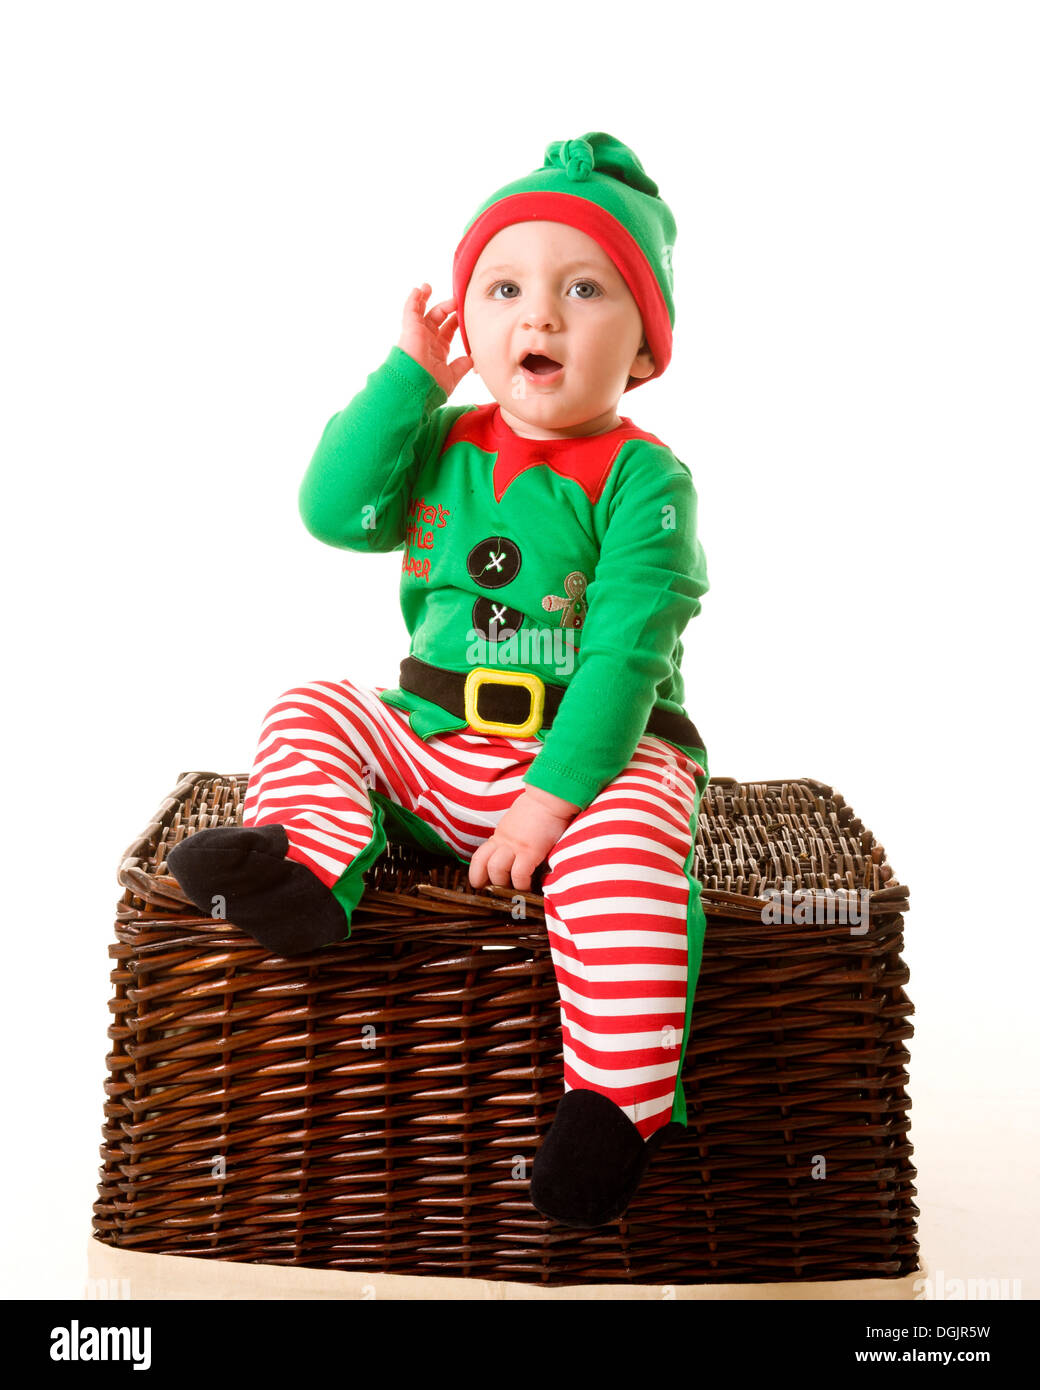 Ein Kind, das wie eine Weihnachtselfe gekleidet ist und auf einem Korbkorb sitzt, mit der Hand zu Ohren sitzt, als ob es auf den Weihnachtsmann hört Stockfoto